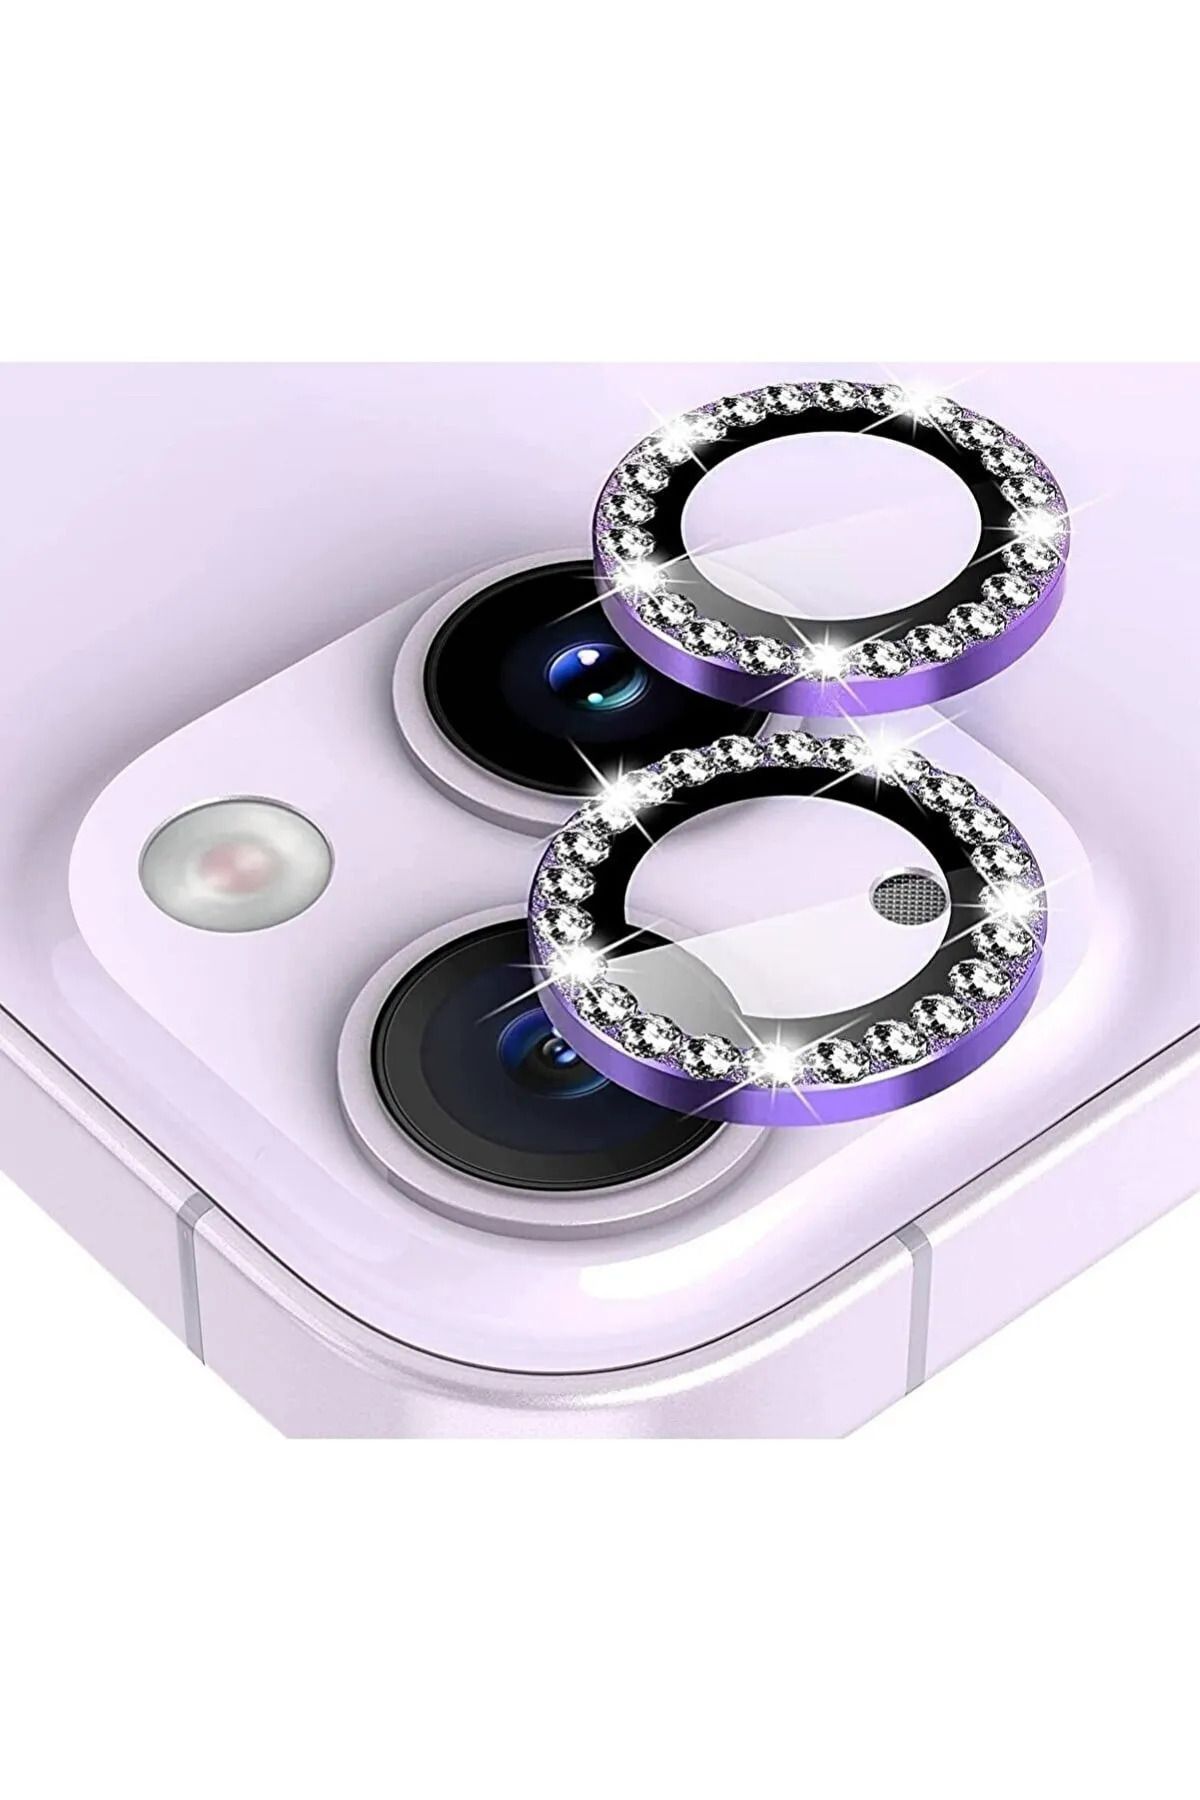 Merwish Apple İphone 11, iphone 12/12pro Ve 12 mini Uyumlu Taşlı Kamera lensi koruyucu mercek lens Mor